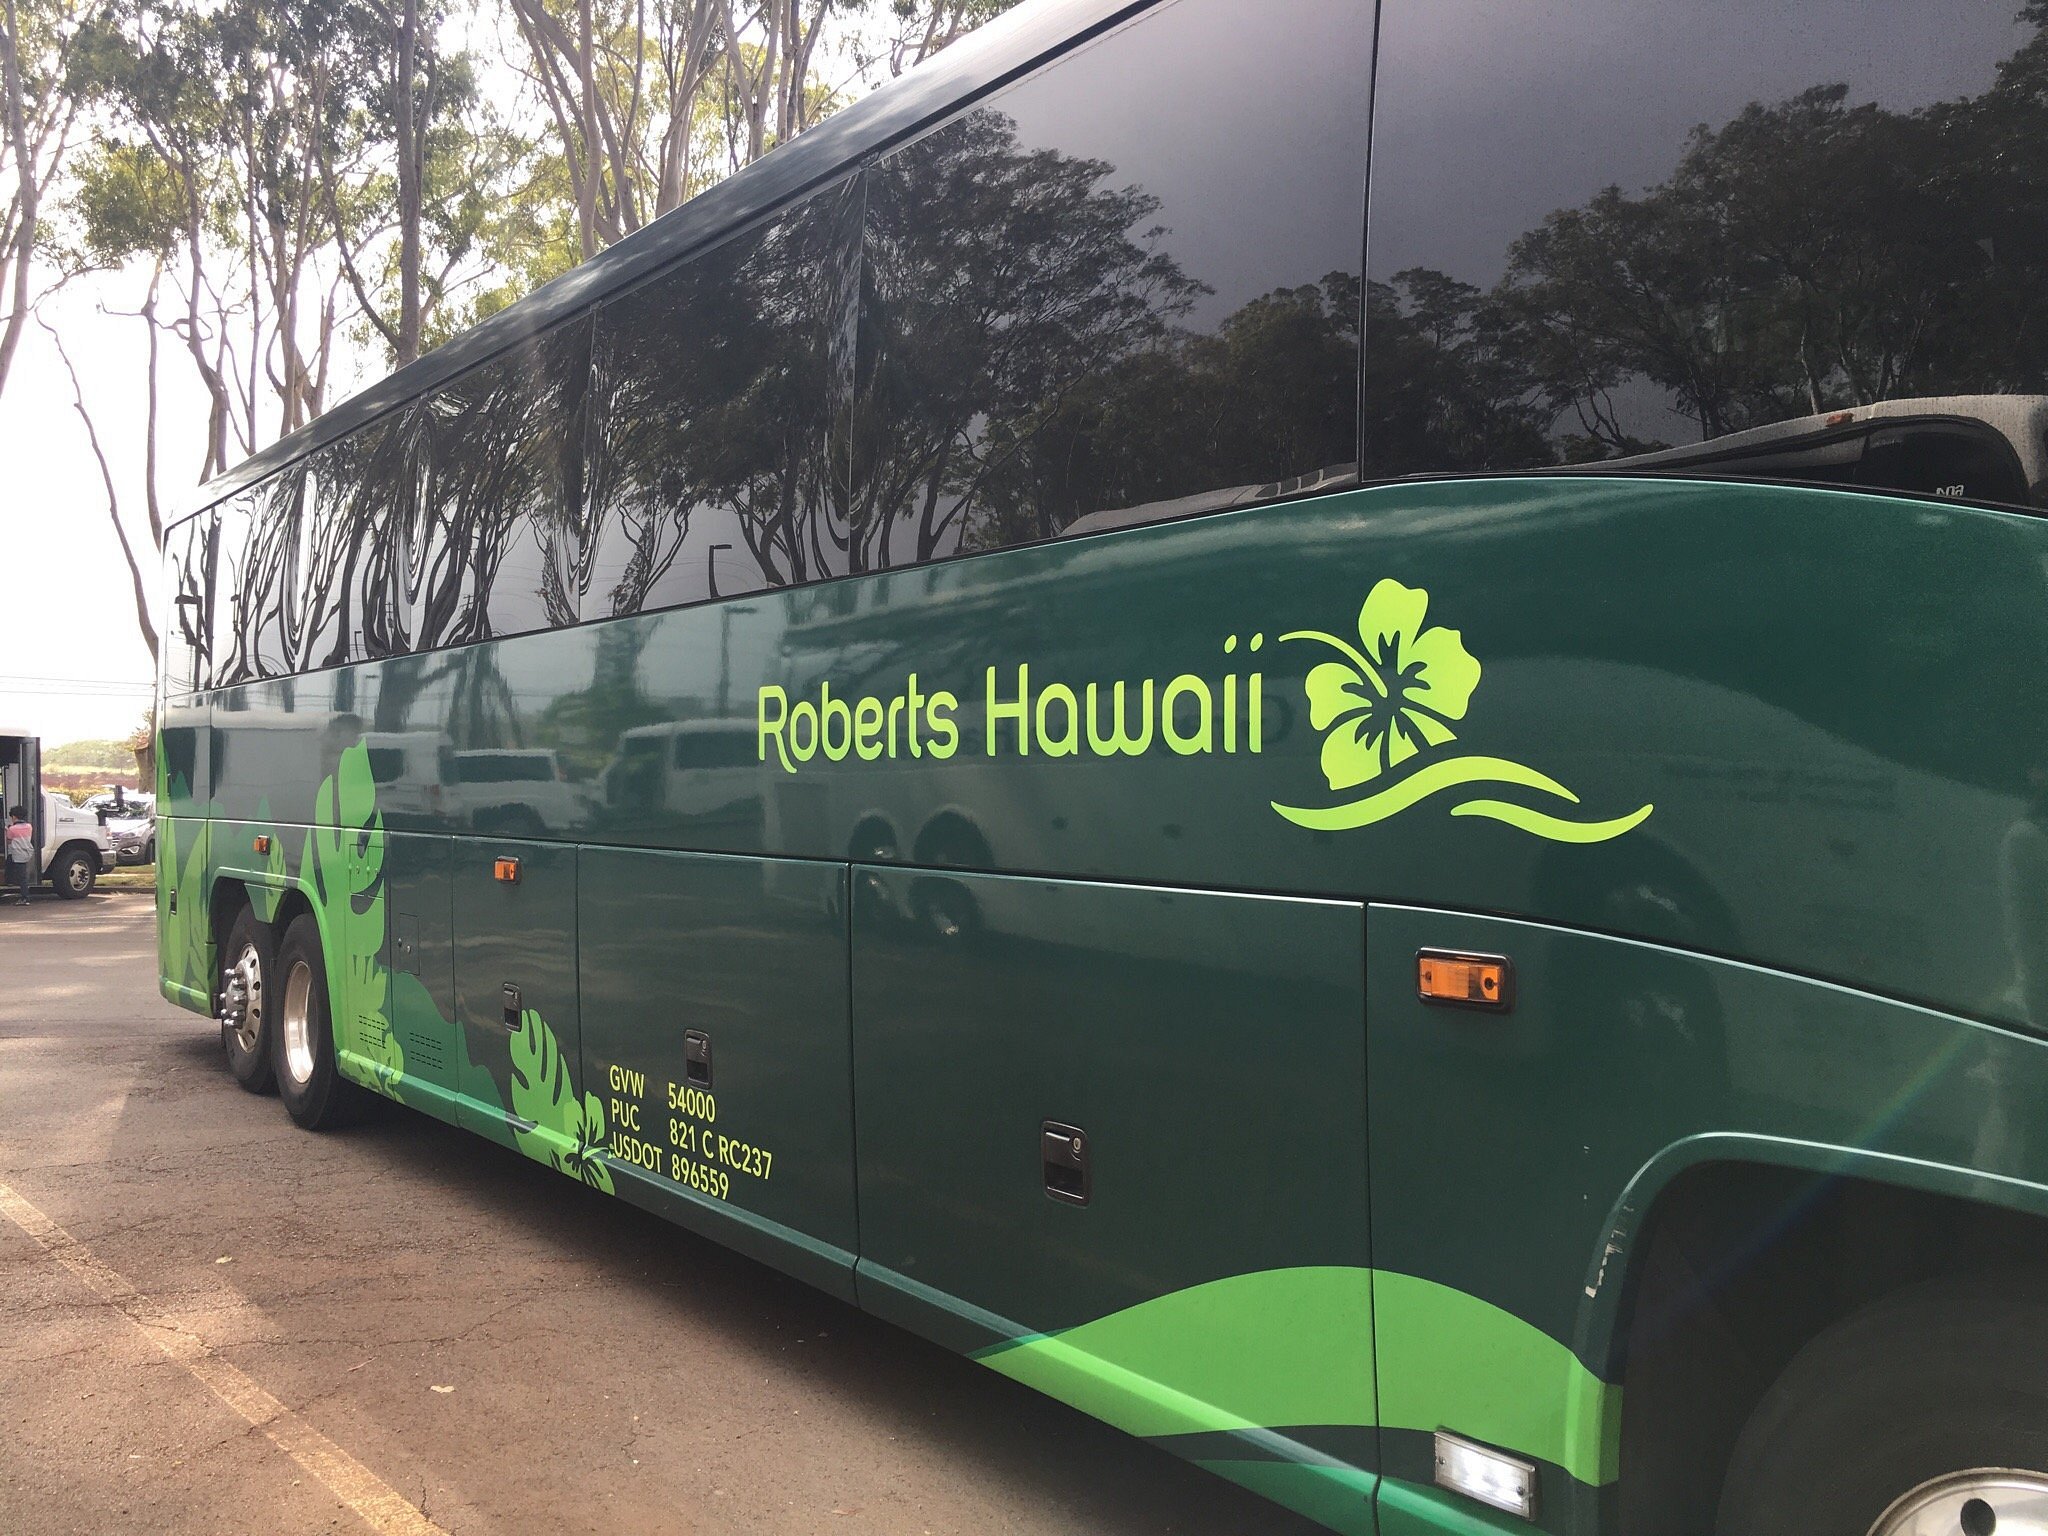 roberts hawaii tours & transportation (maui) reviews